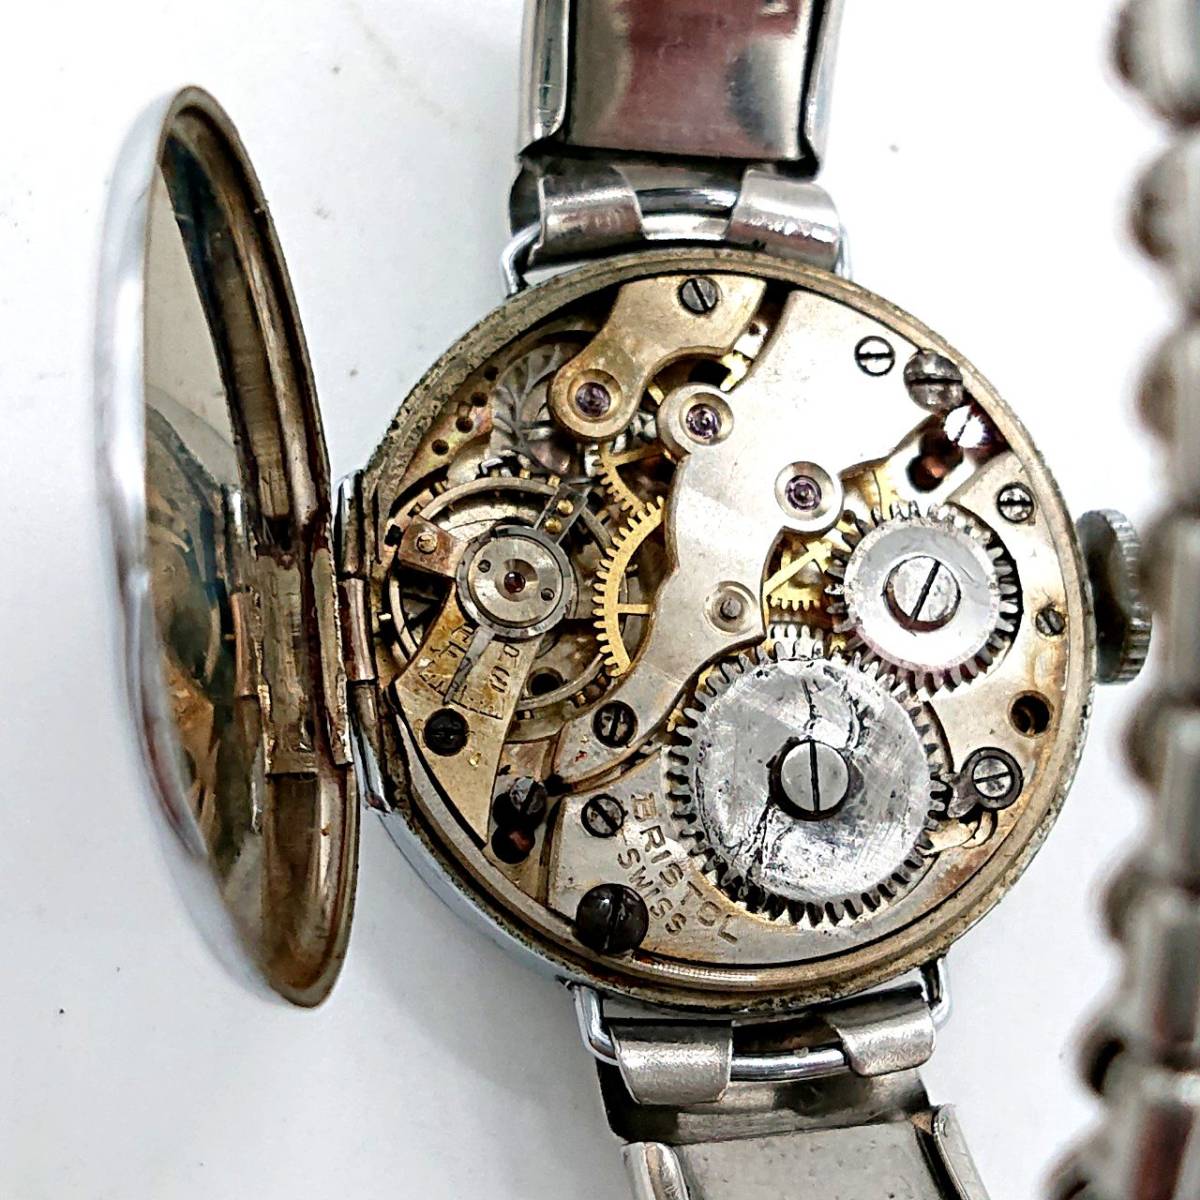 [ operation 0]BRISTOL Bliss toru self-winding watch wristwatch silver face 25 stone lady's 